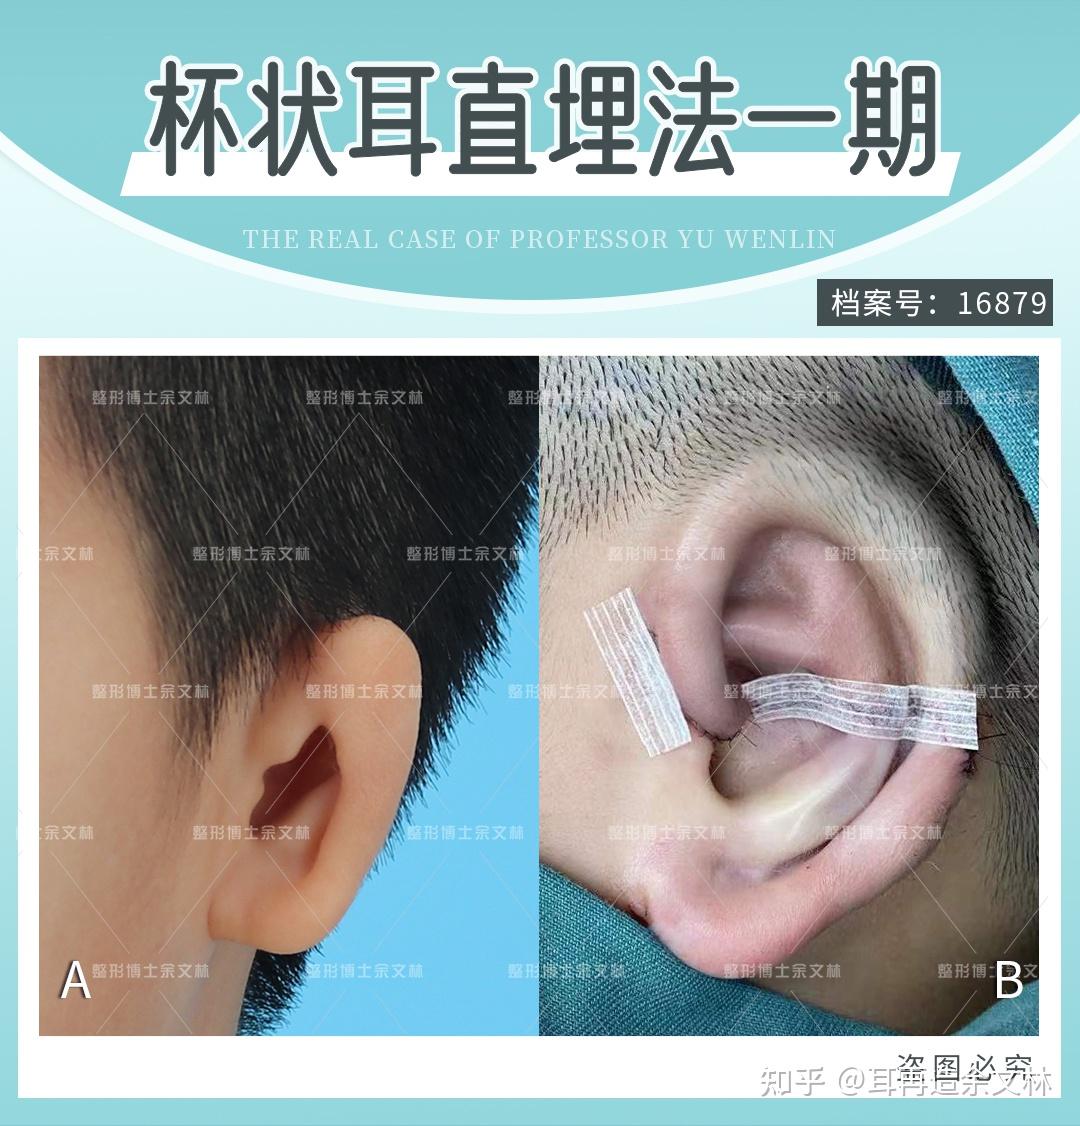 【案例分析】35岁男性患者做耳再造手术矫正小耳畸形 - 哔哩哔哩